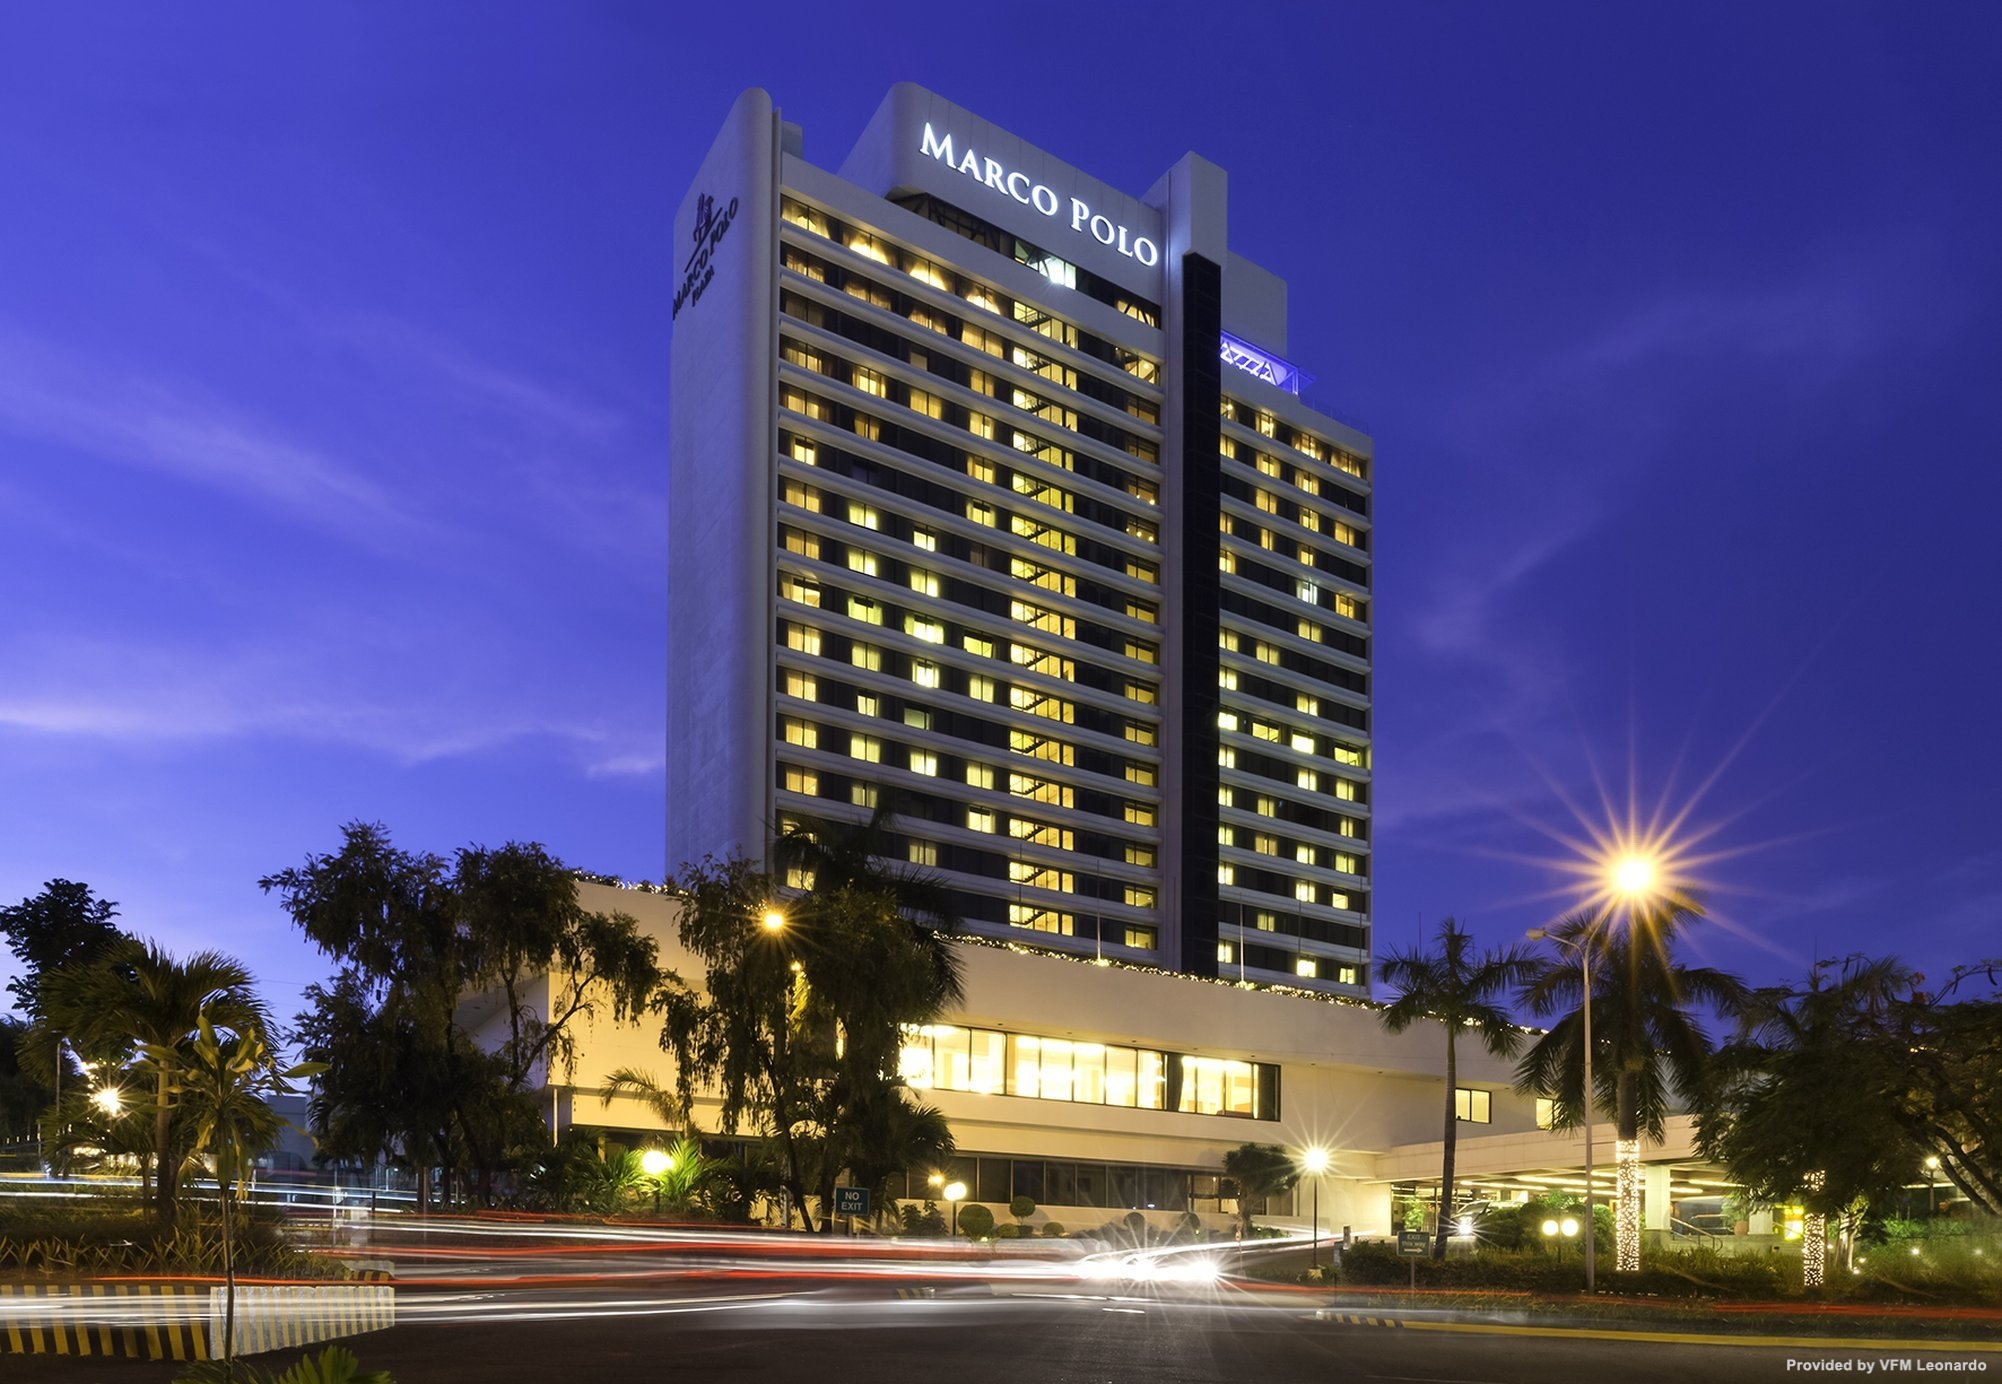 Hotel Marco Polo Plaza Cebu - Cebu City presso HRS con servizi gratuiti